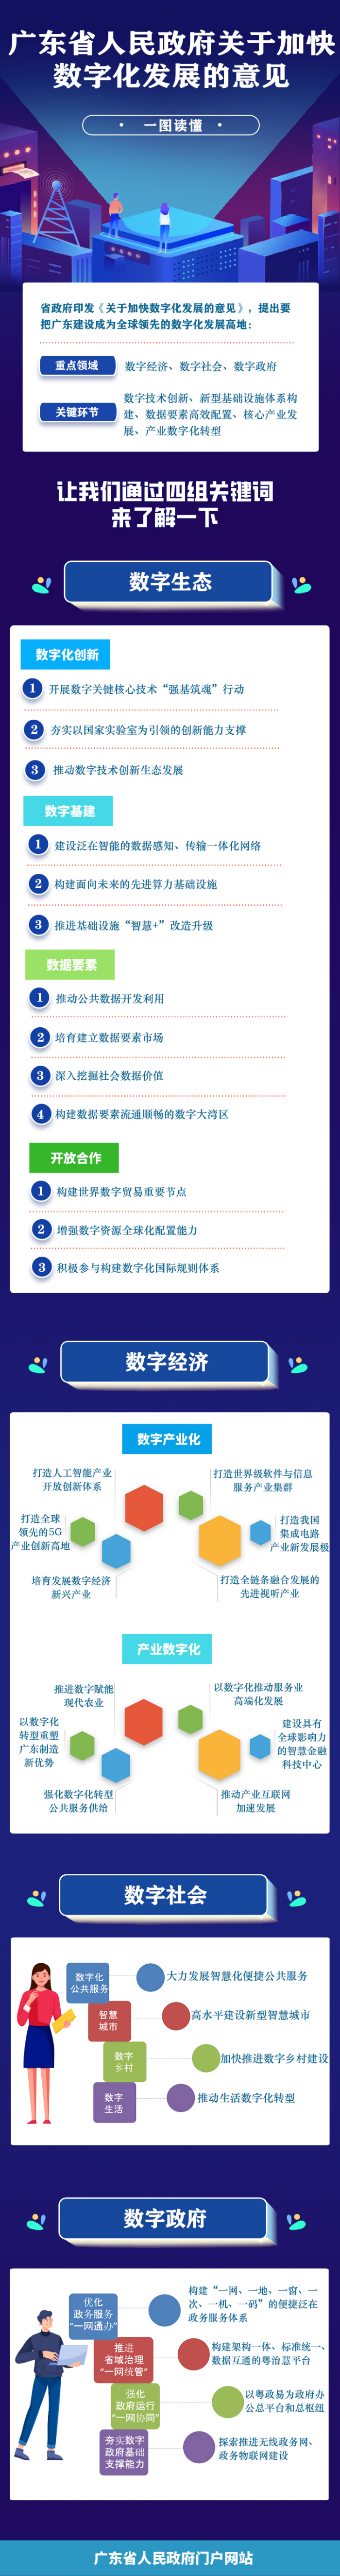 一图读懂广东省人民政府关于加快数字化发展的意见.jpg